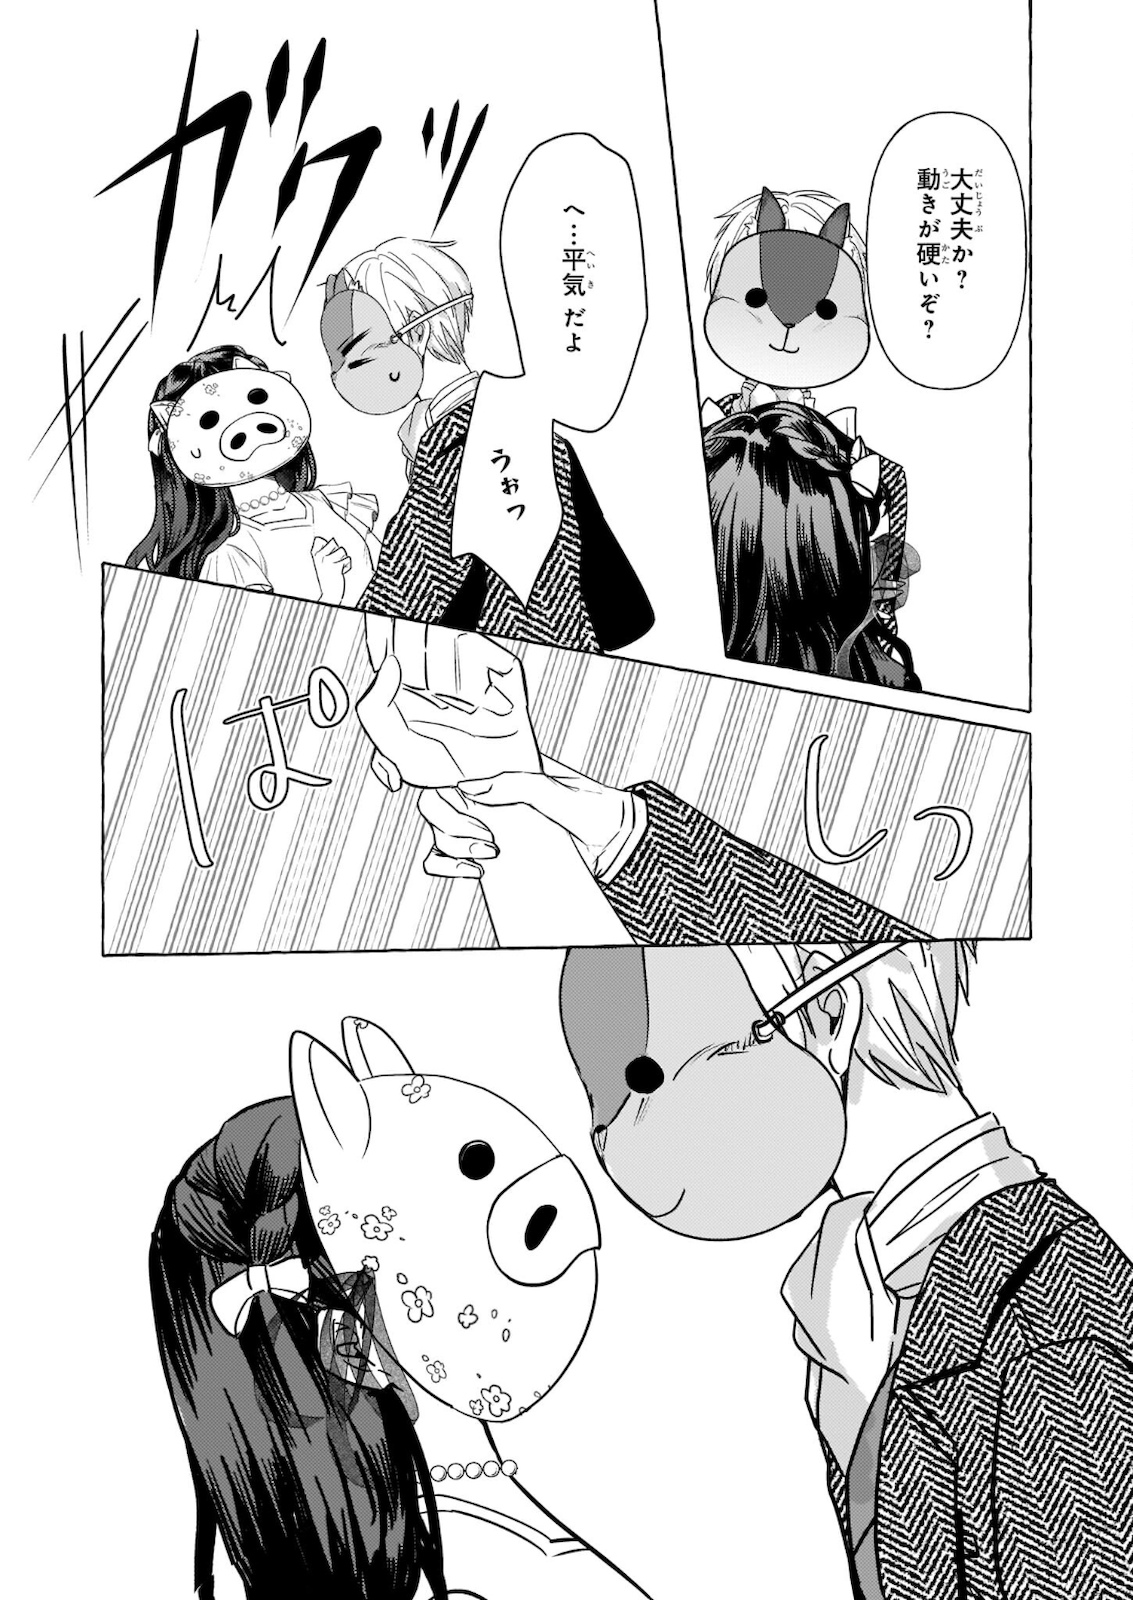 Tenseisaki ga Shoujo Manga no Shirobuta Reijou datta reBoooot! - Chapter 10.2 - Page 15